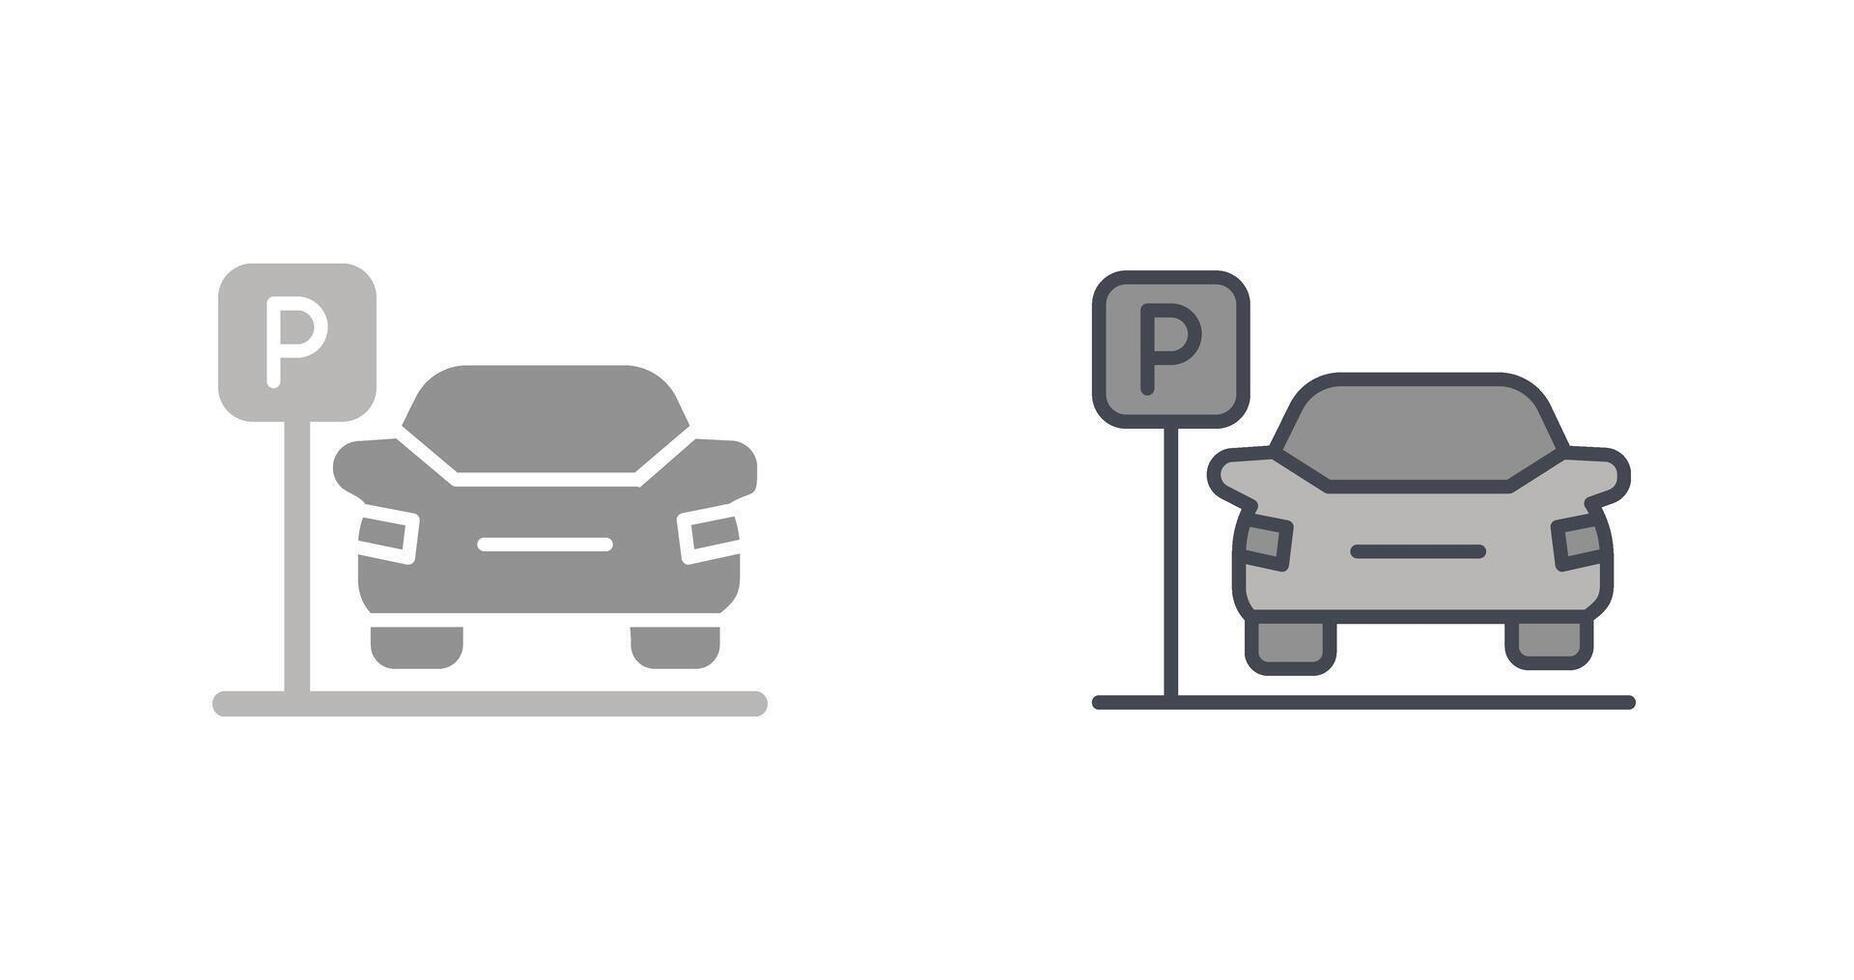 design de ícone de estacionamento vetor